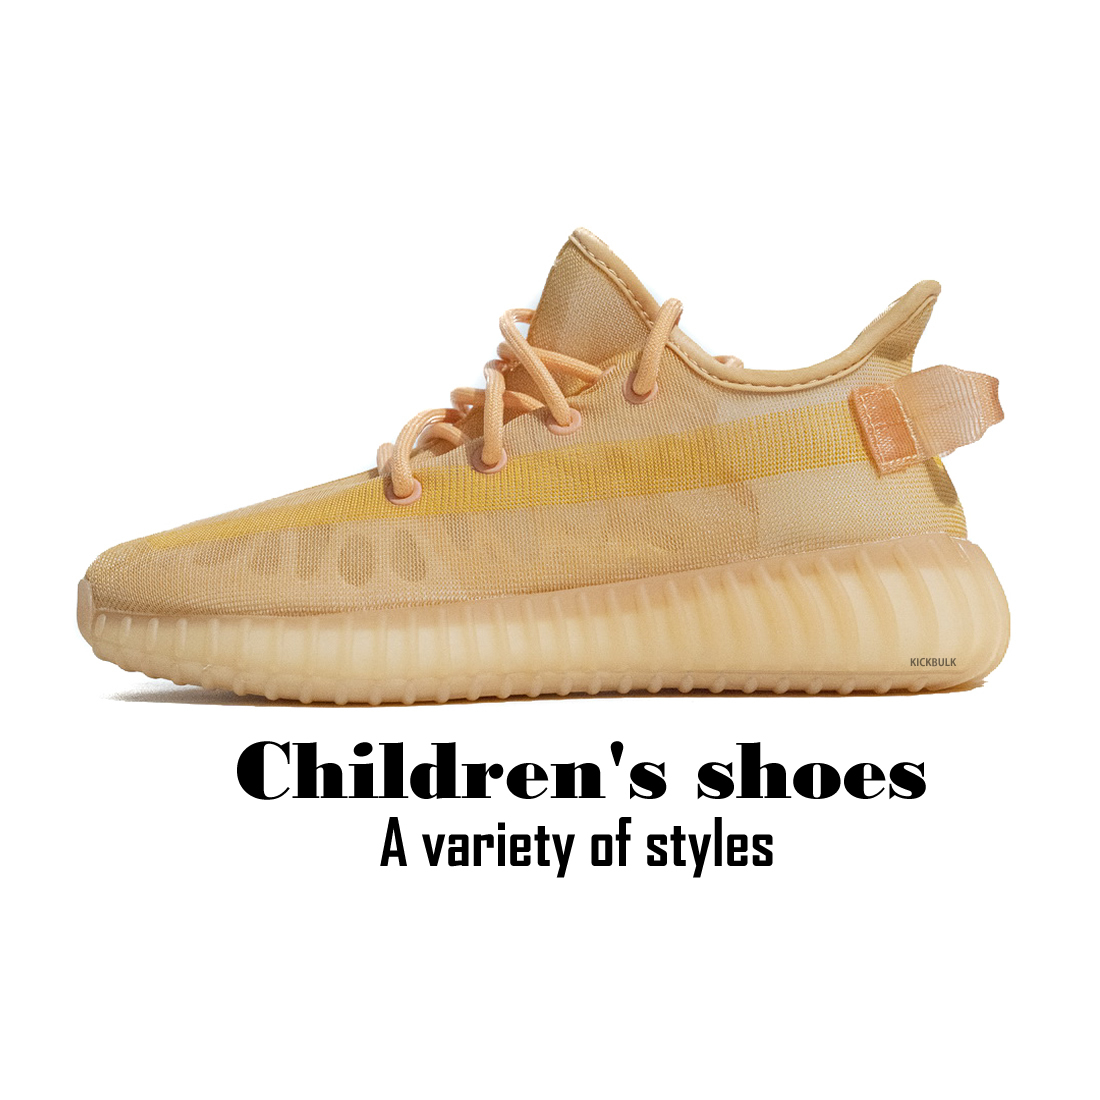 Adidas Yeezy Boost Kids Sneaker 1 - www.kickbulk.co